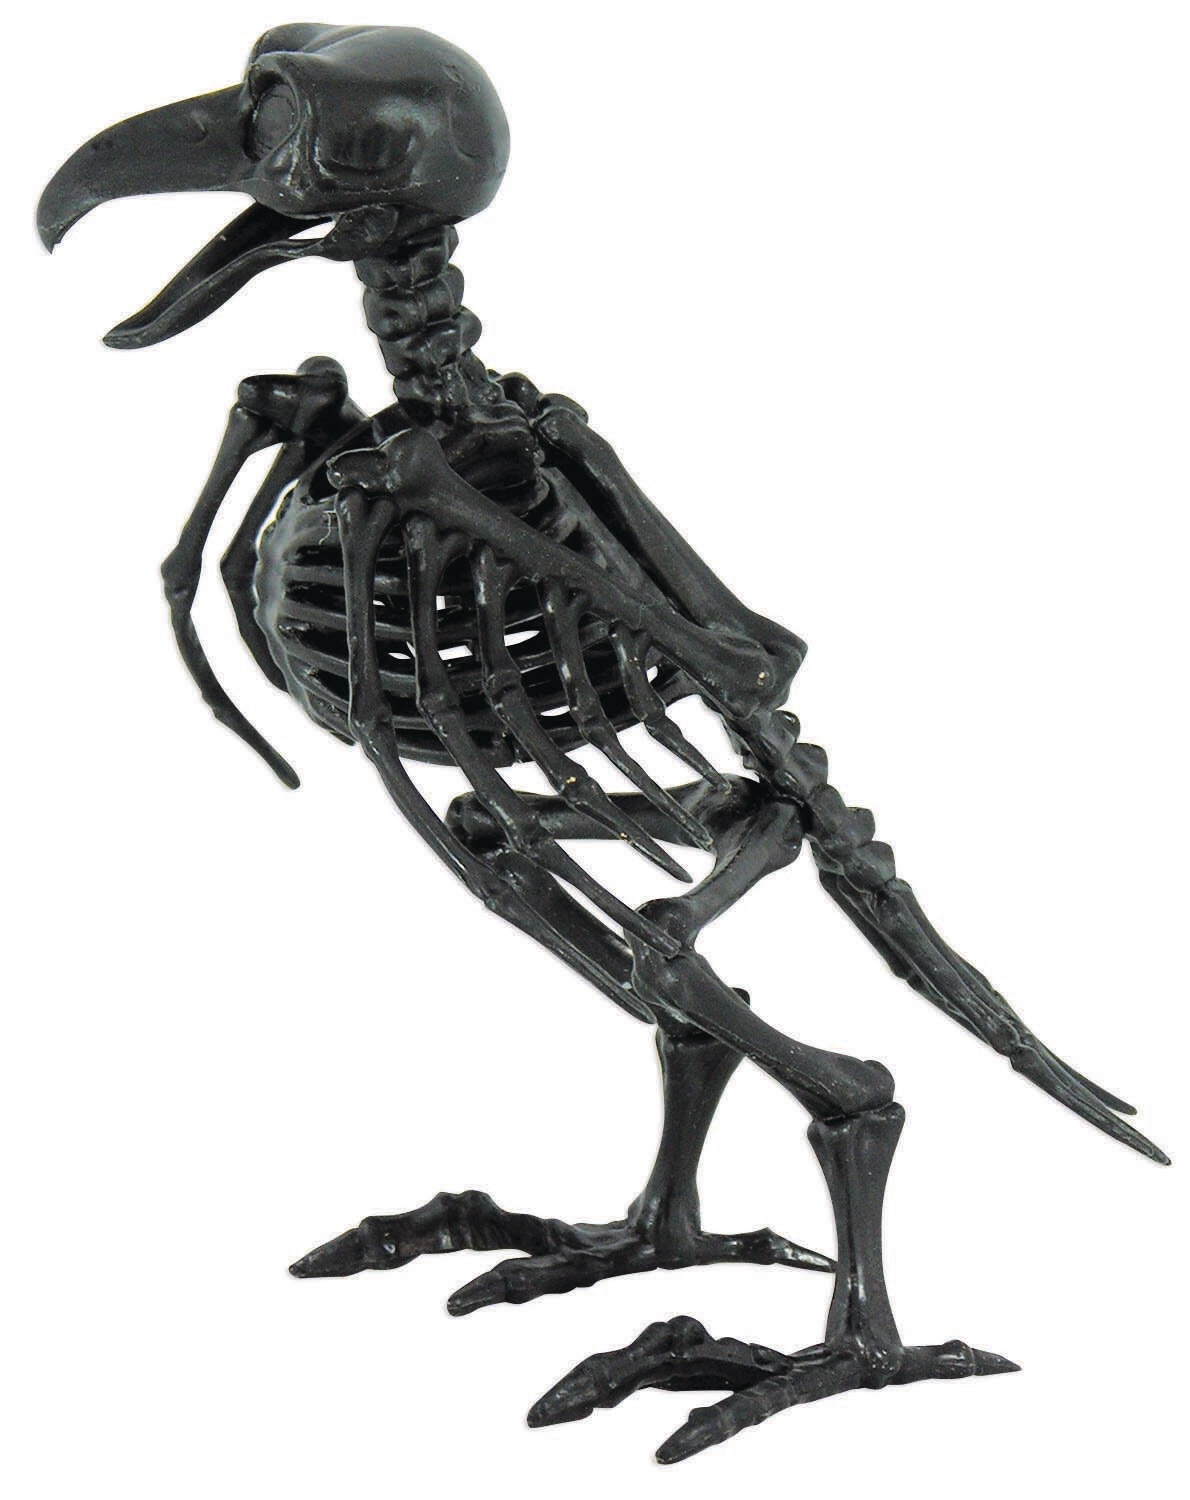 Skeleton Raven